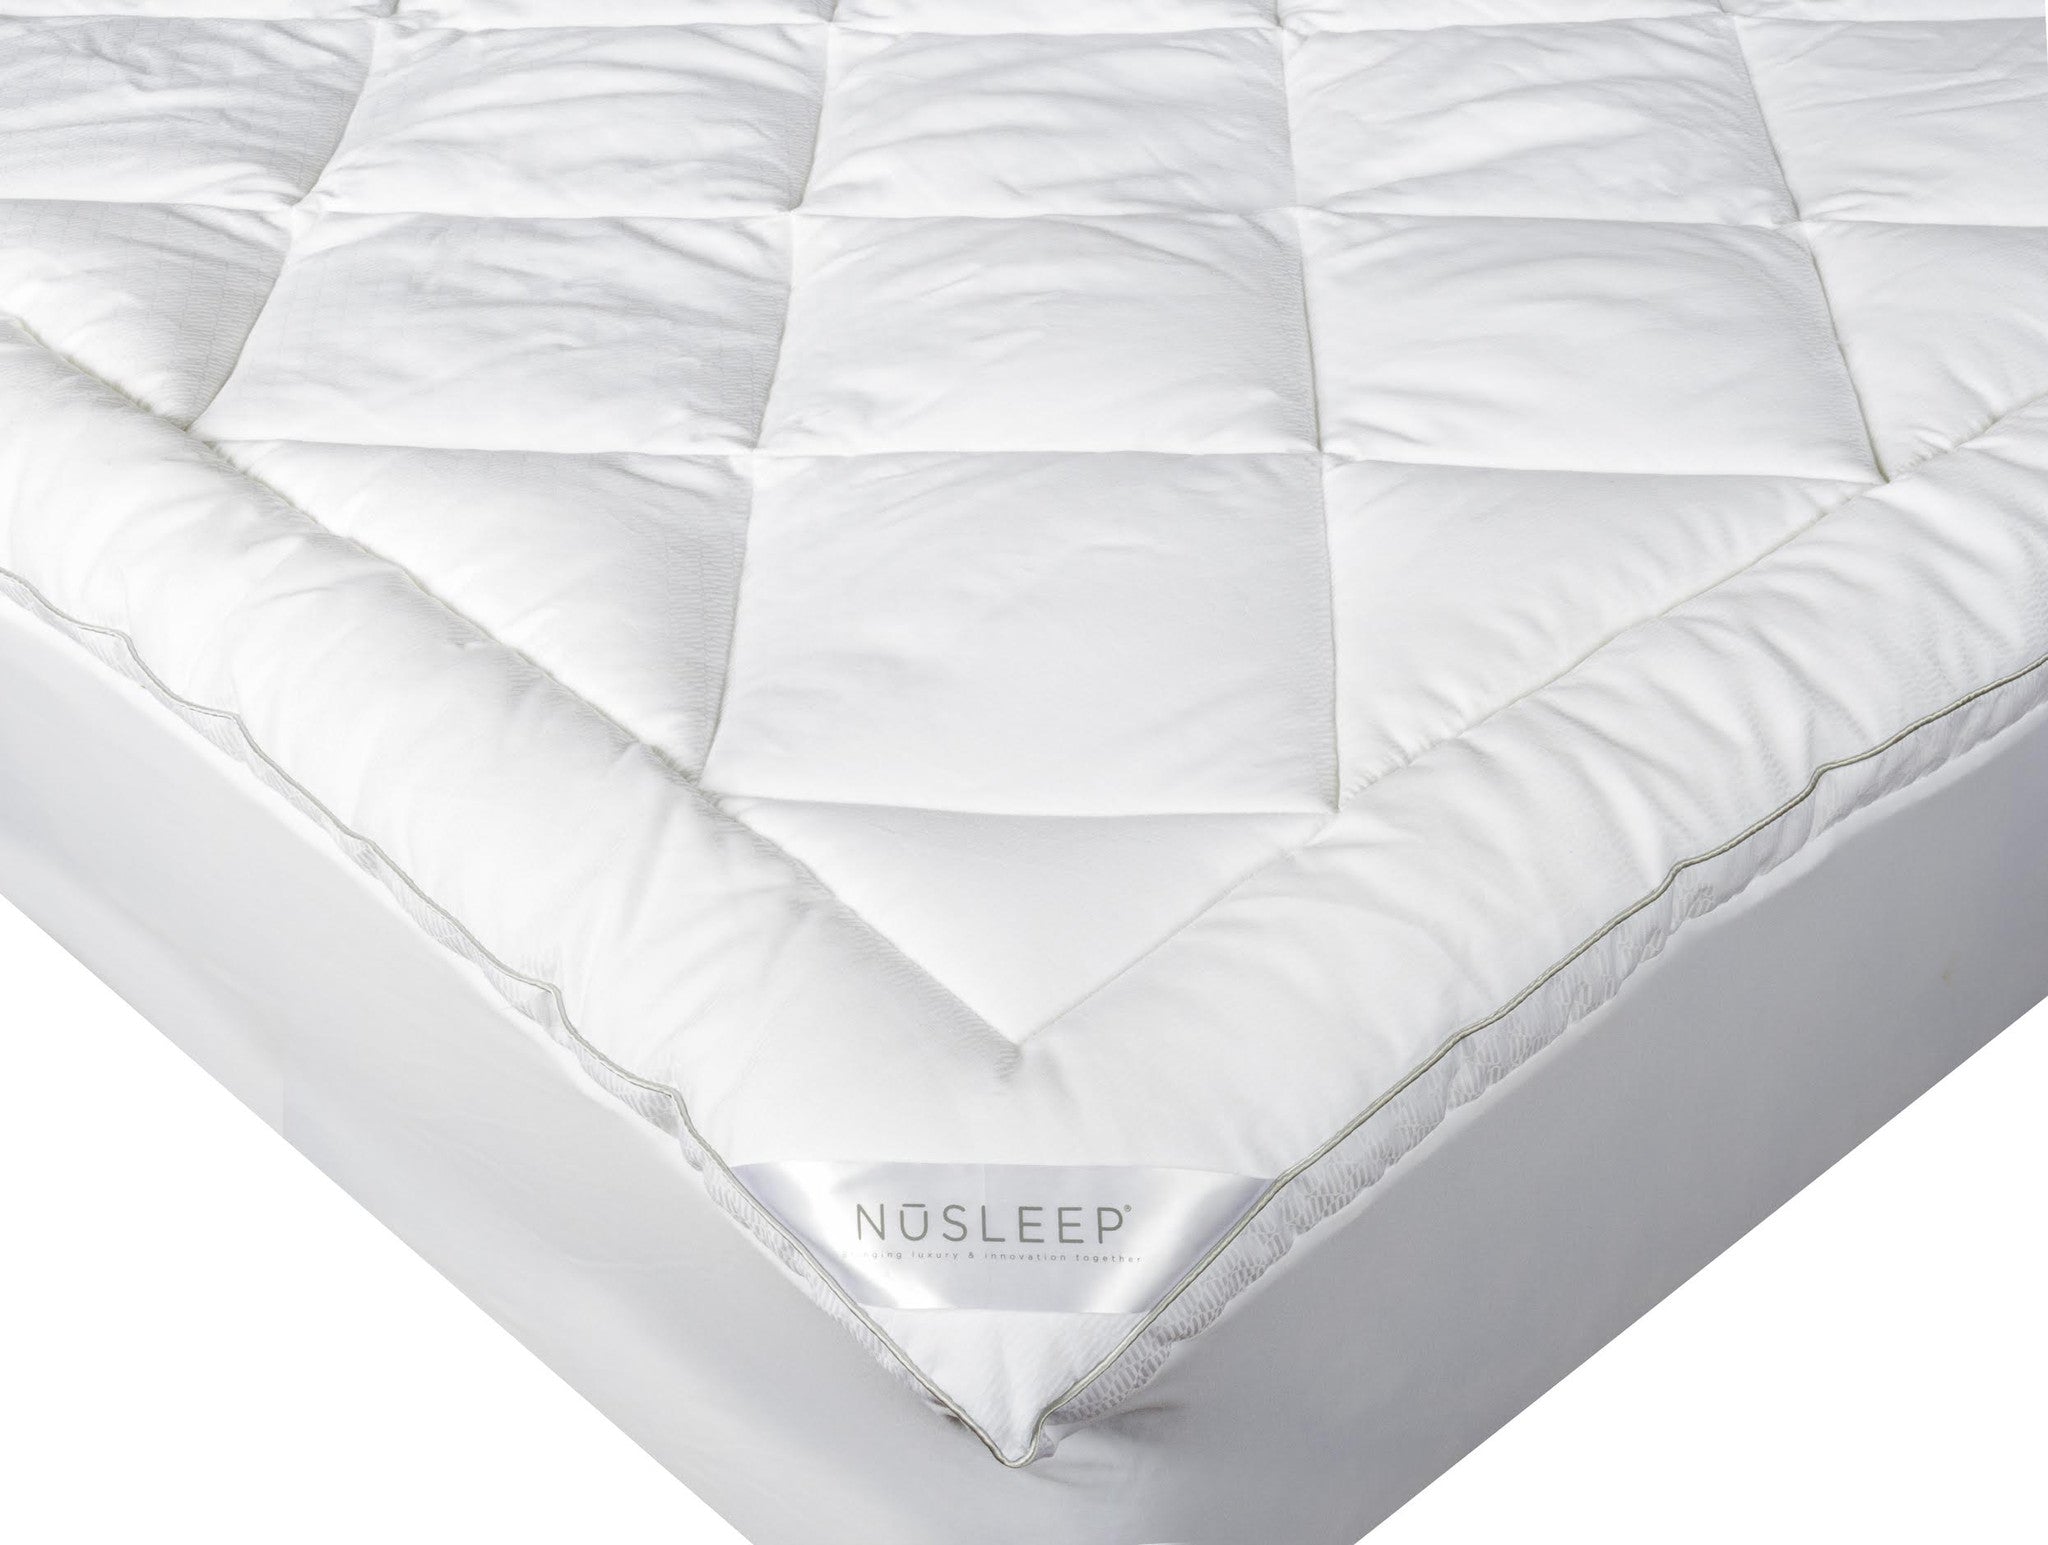 37.5 technology mattress pad